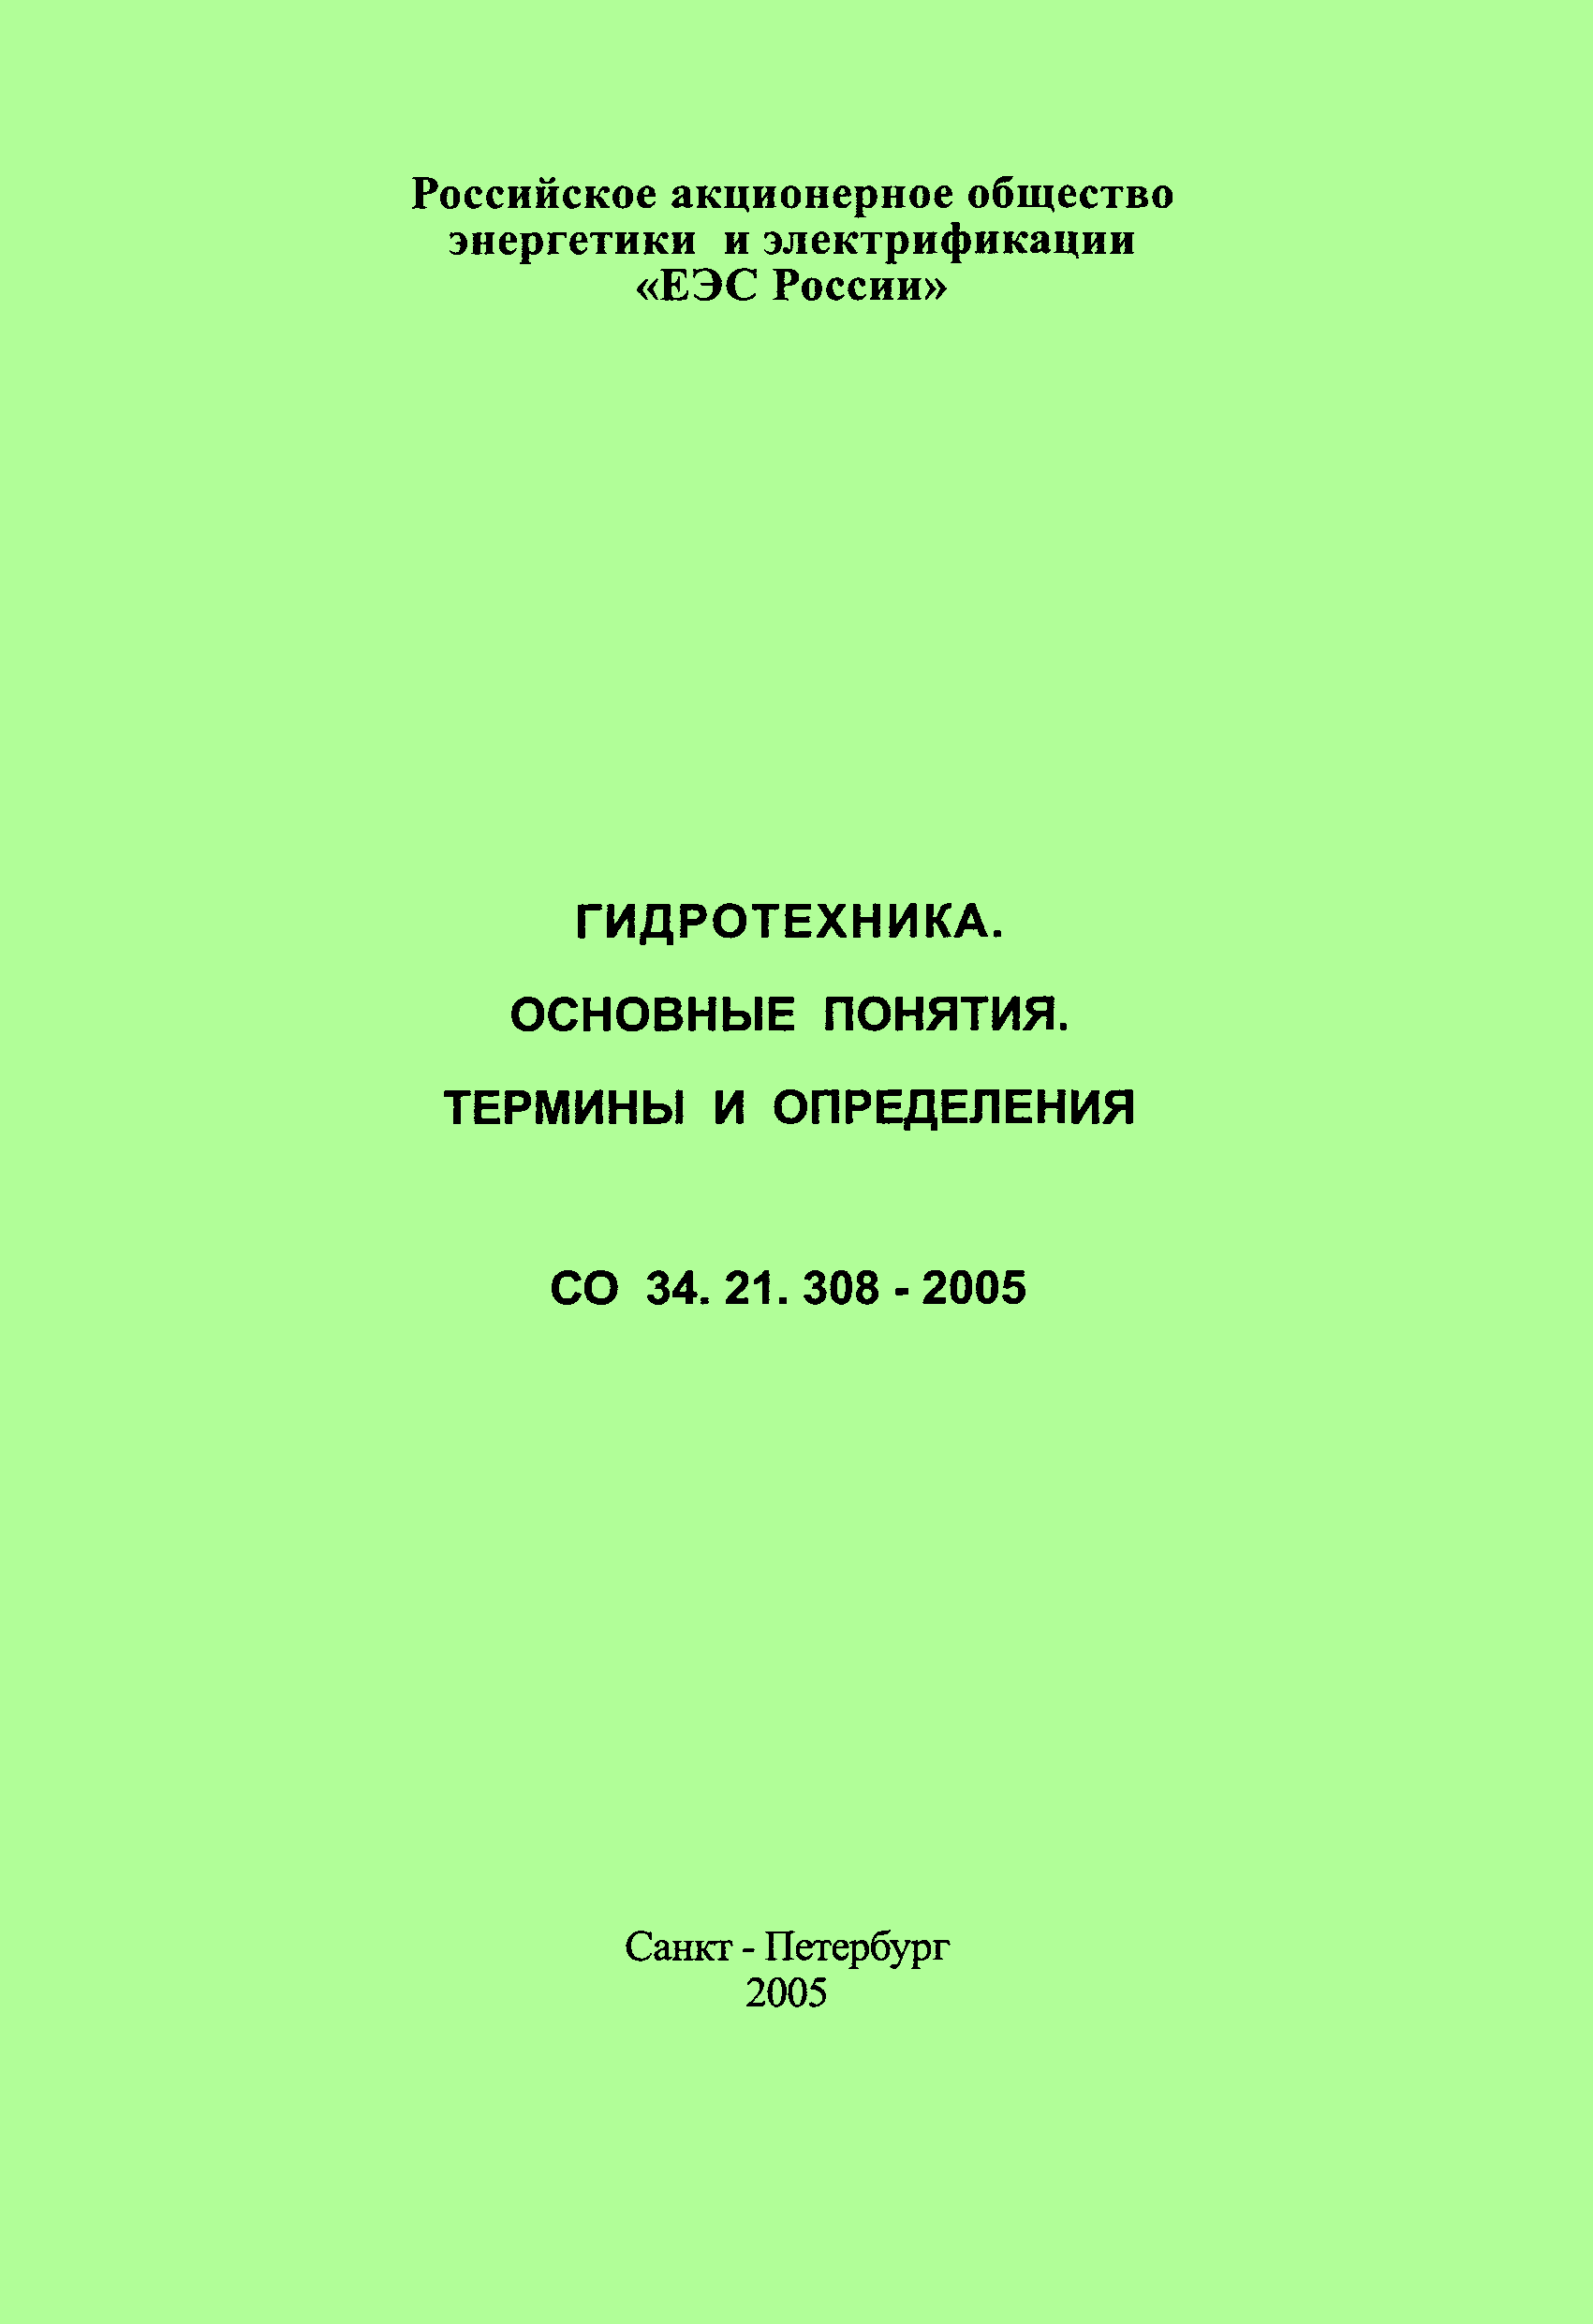 СО 34.21.308-2005